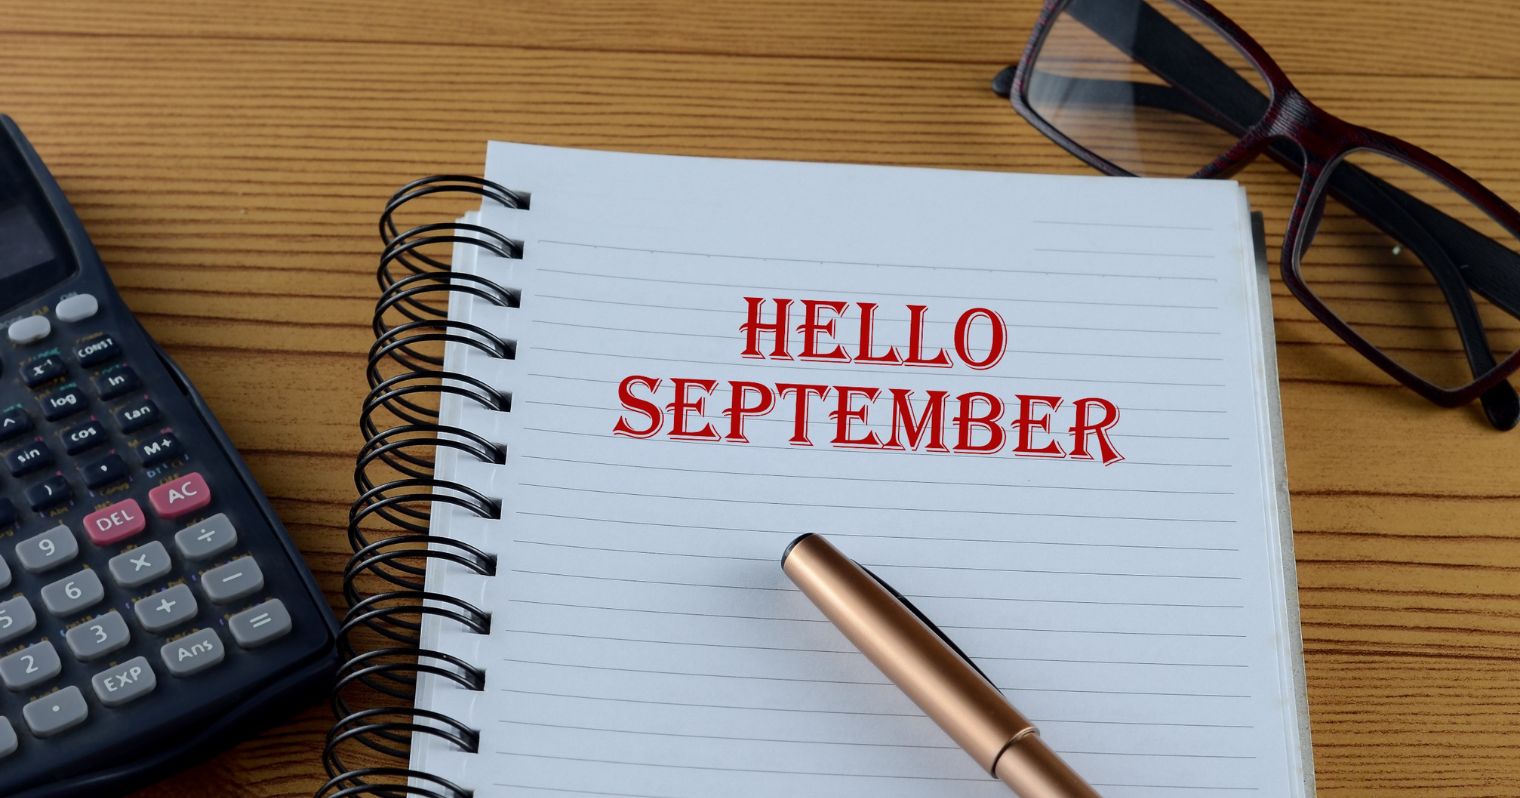 Egy noteszen egy toll és egy számológép mellett a hello szeptember felirat látható